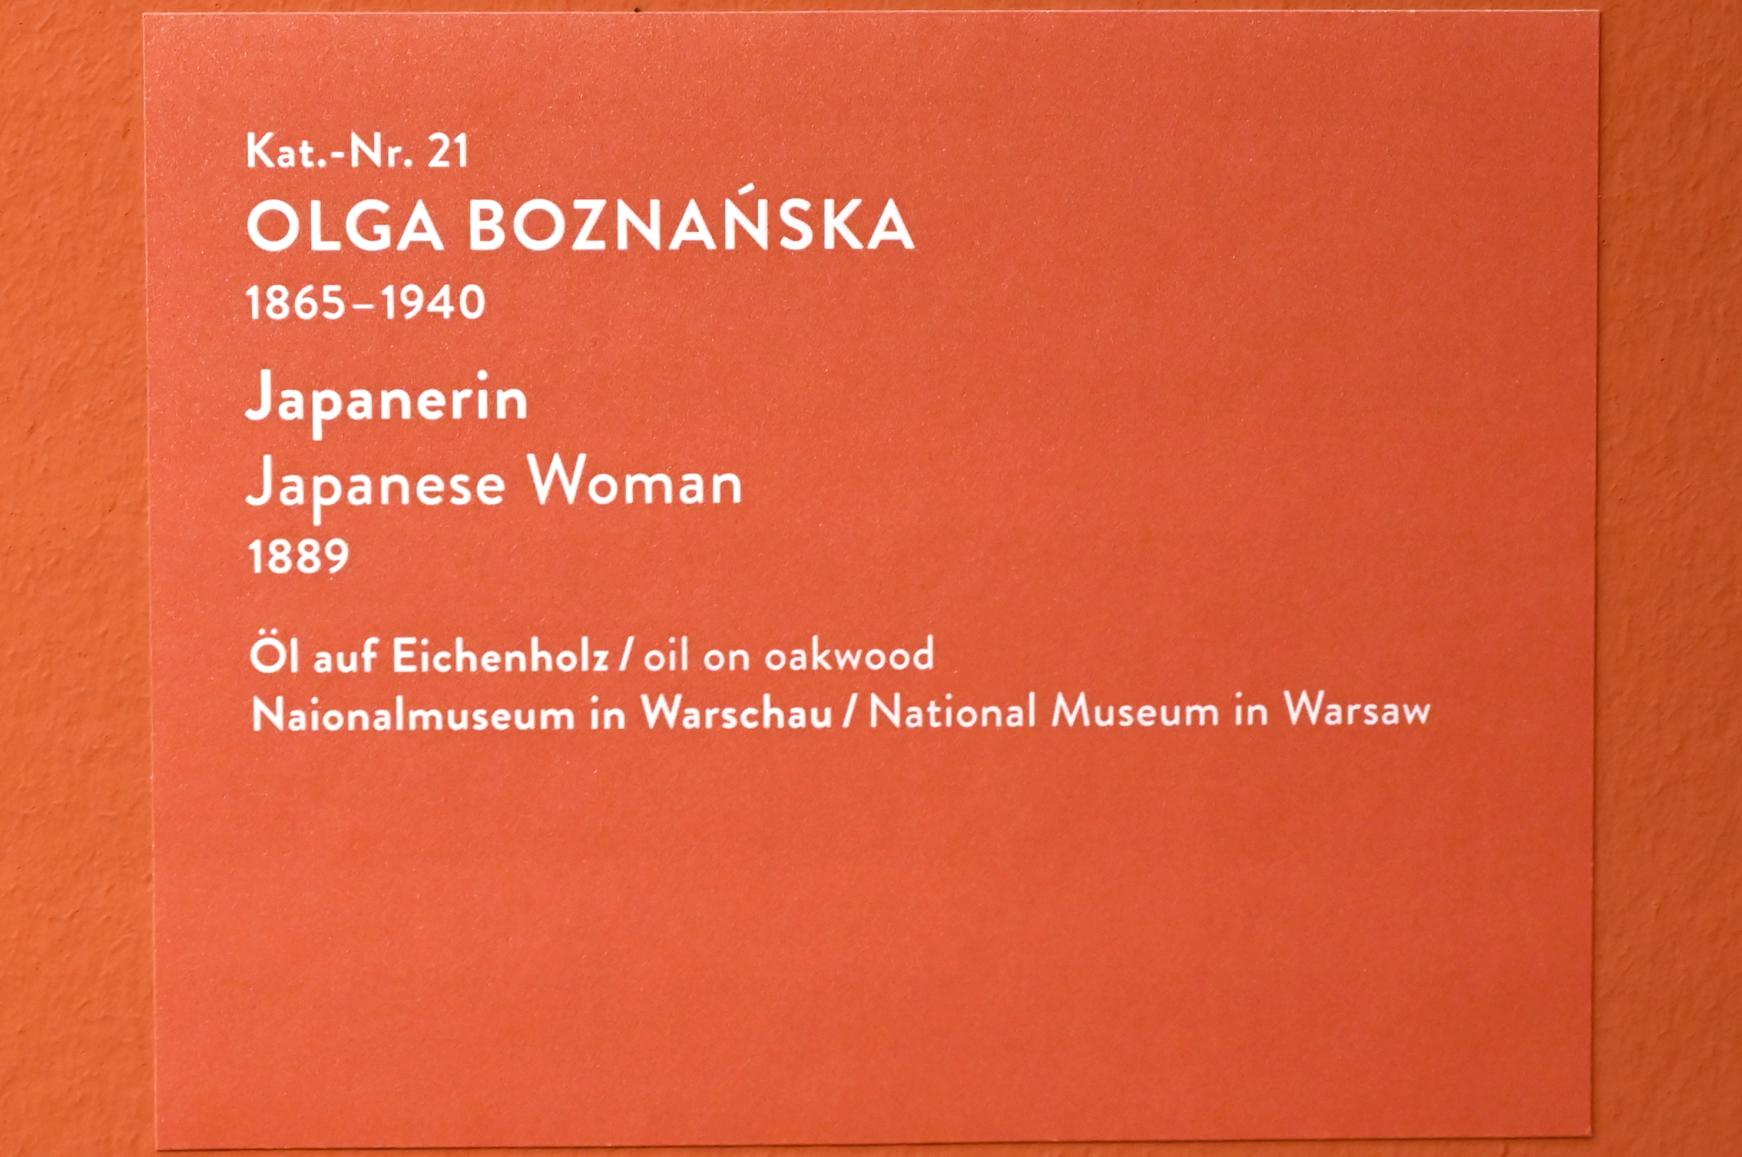 Olga Boznańska (1889–1921), Japanerin, München, Kunsthalle, Ausstellung "Polnischer Symbolismus um 1900" vom 25.03.-07.08.2022, Saal 3 - Im Dialog mit der Europäischen Kunst, 1889, Bild 2/2